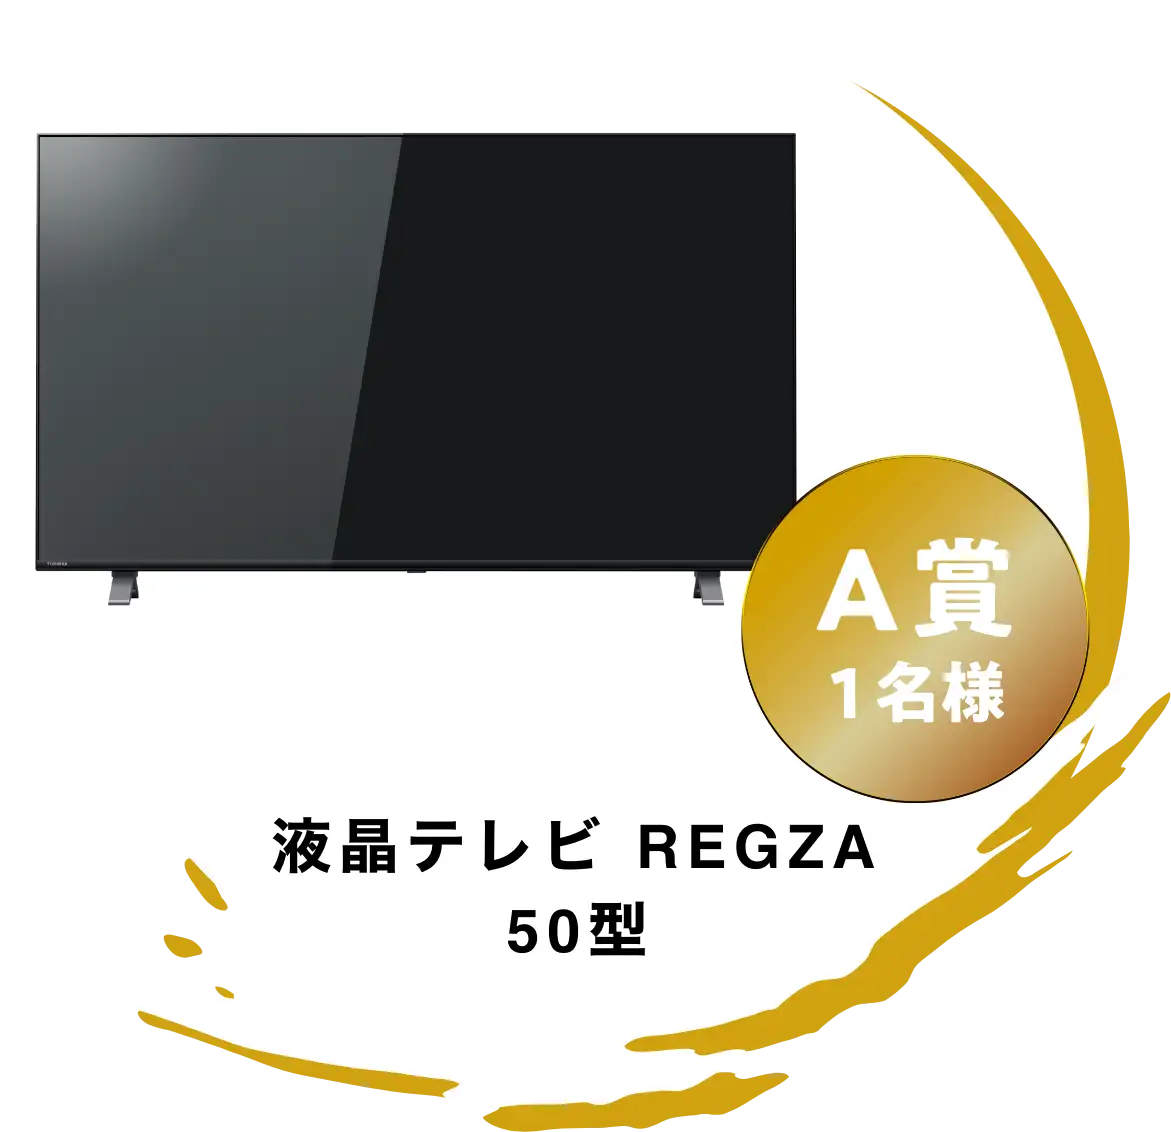 液晶テレビ REGZA 50型